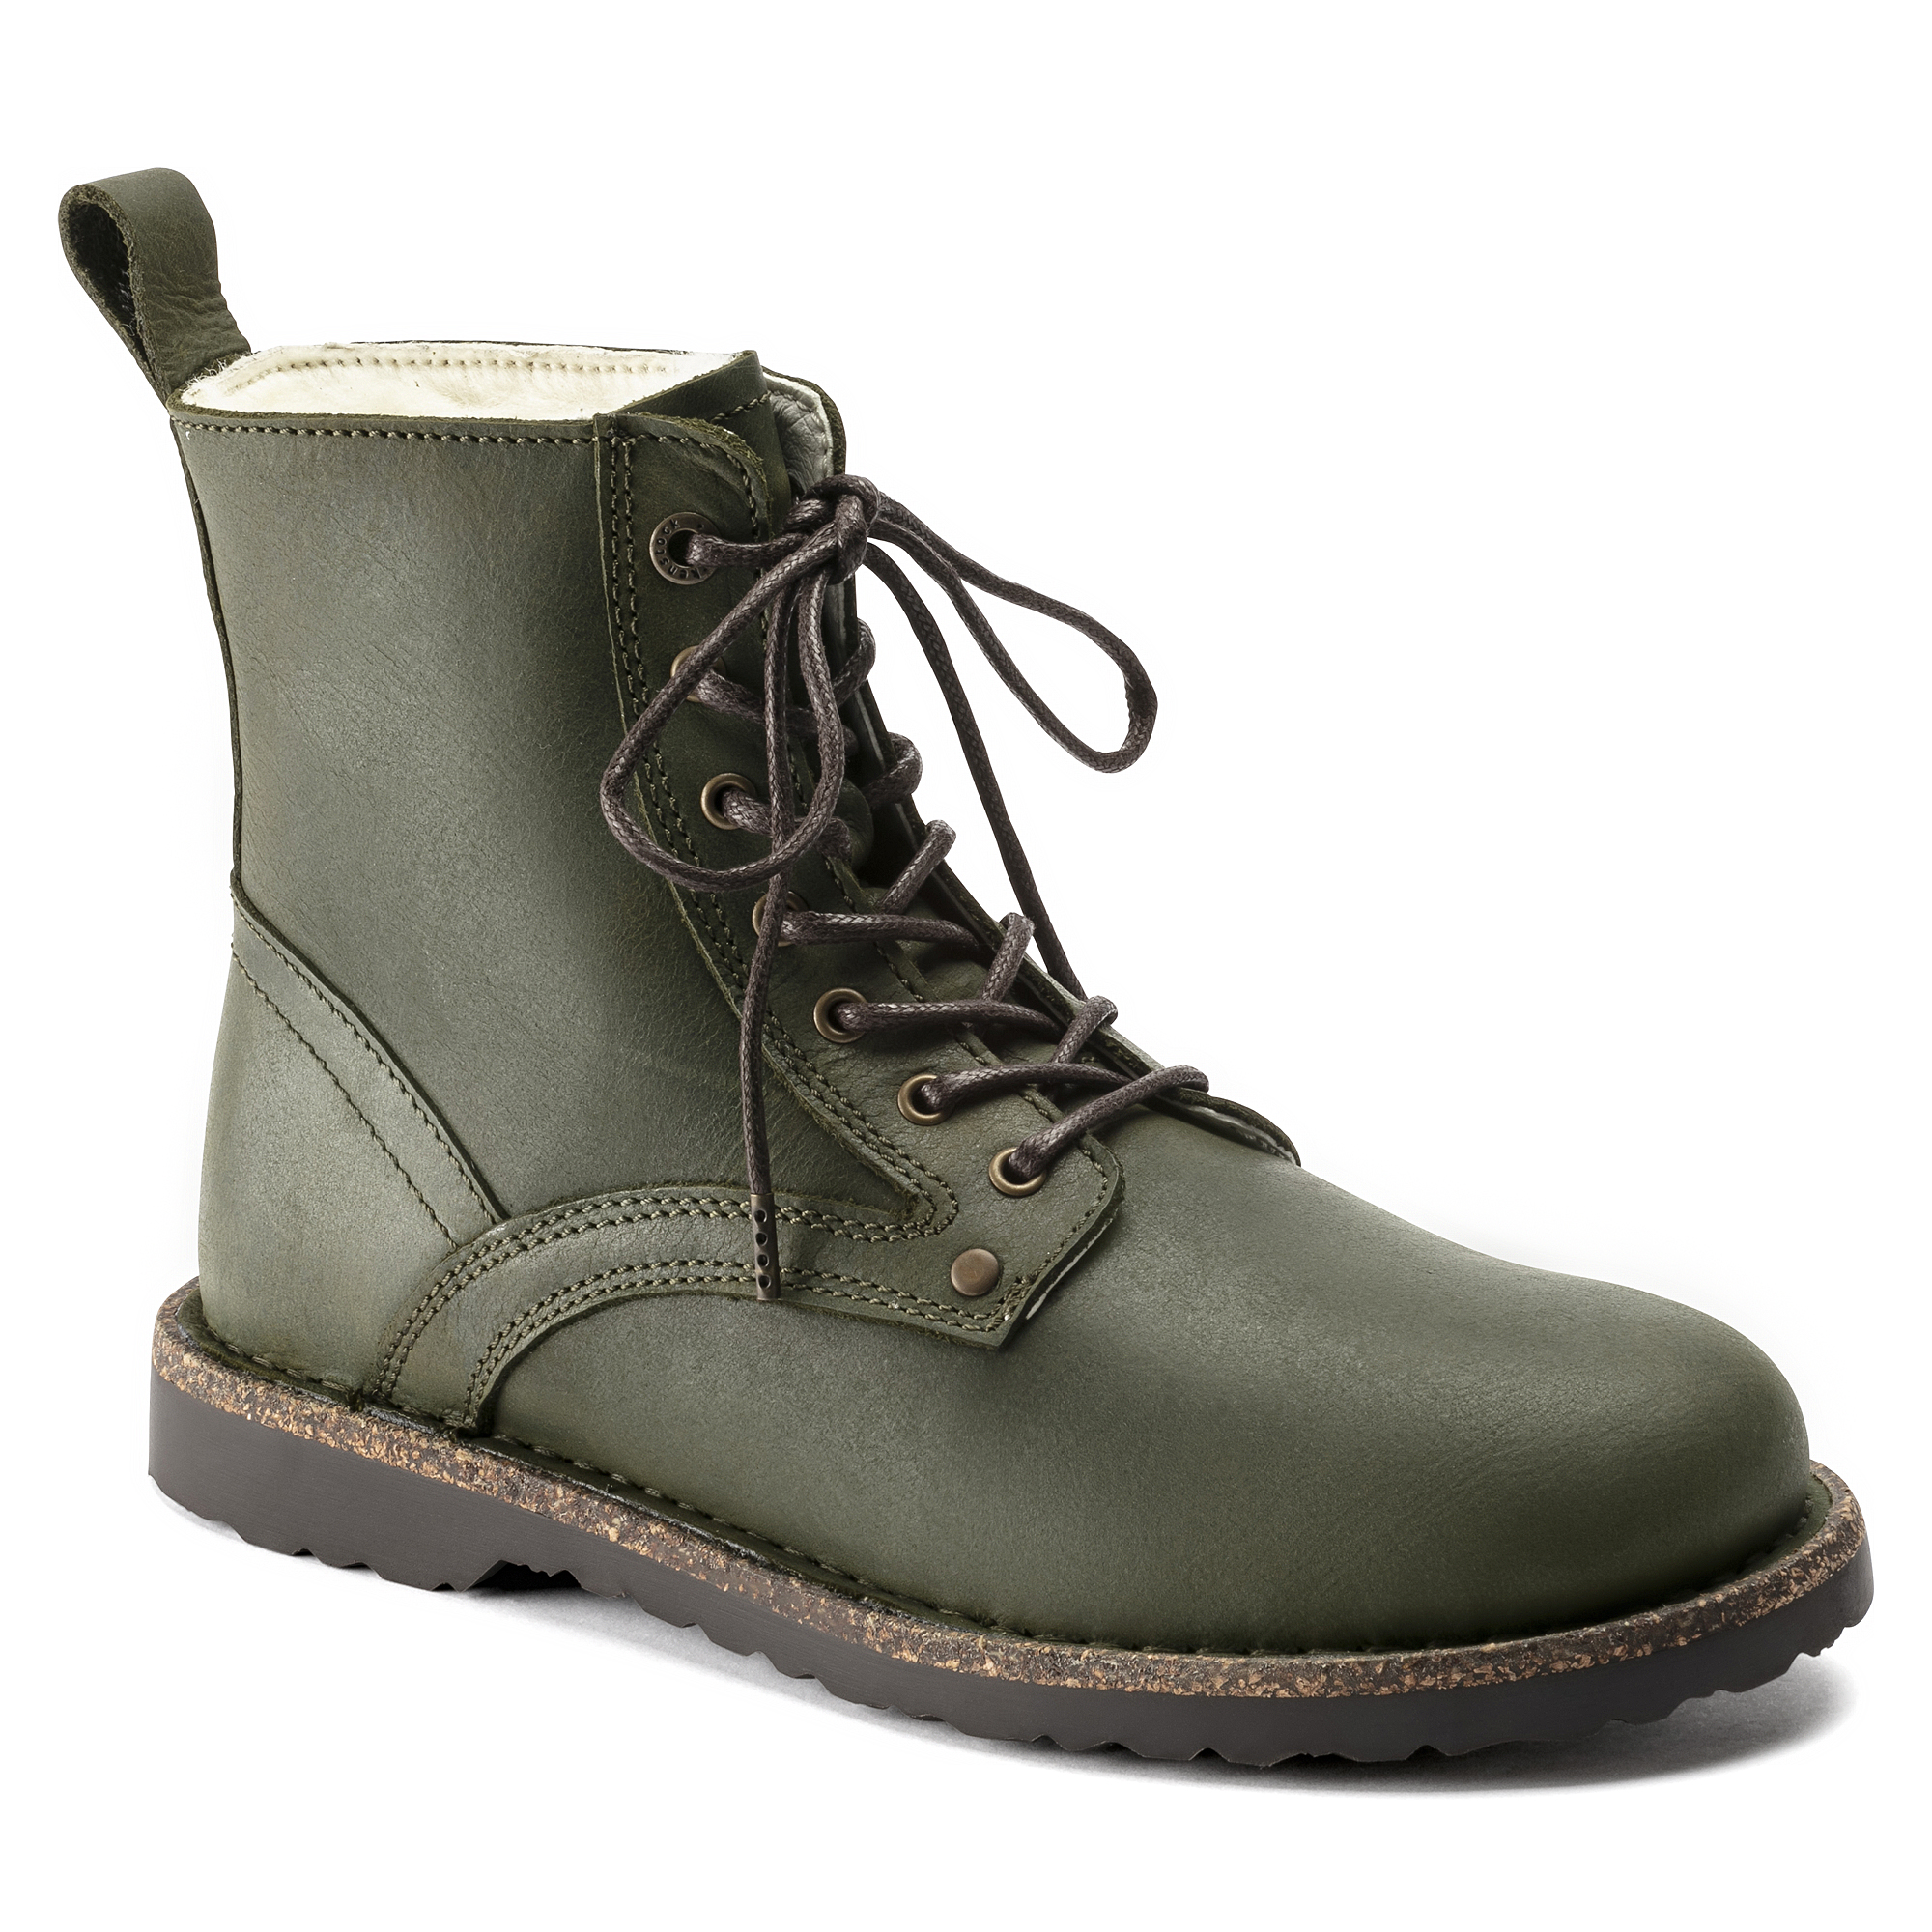 birkenstock waterproof boots